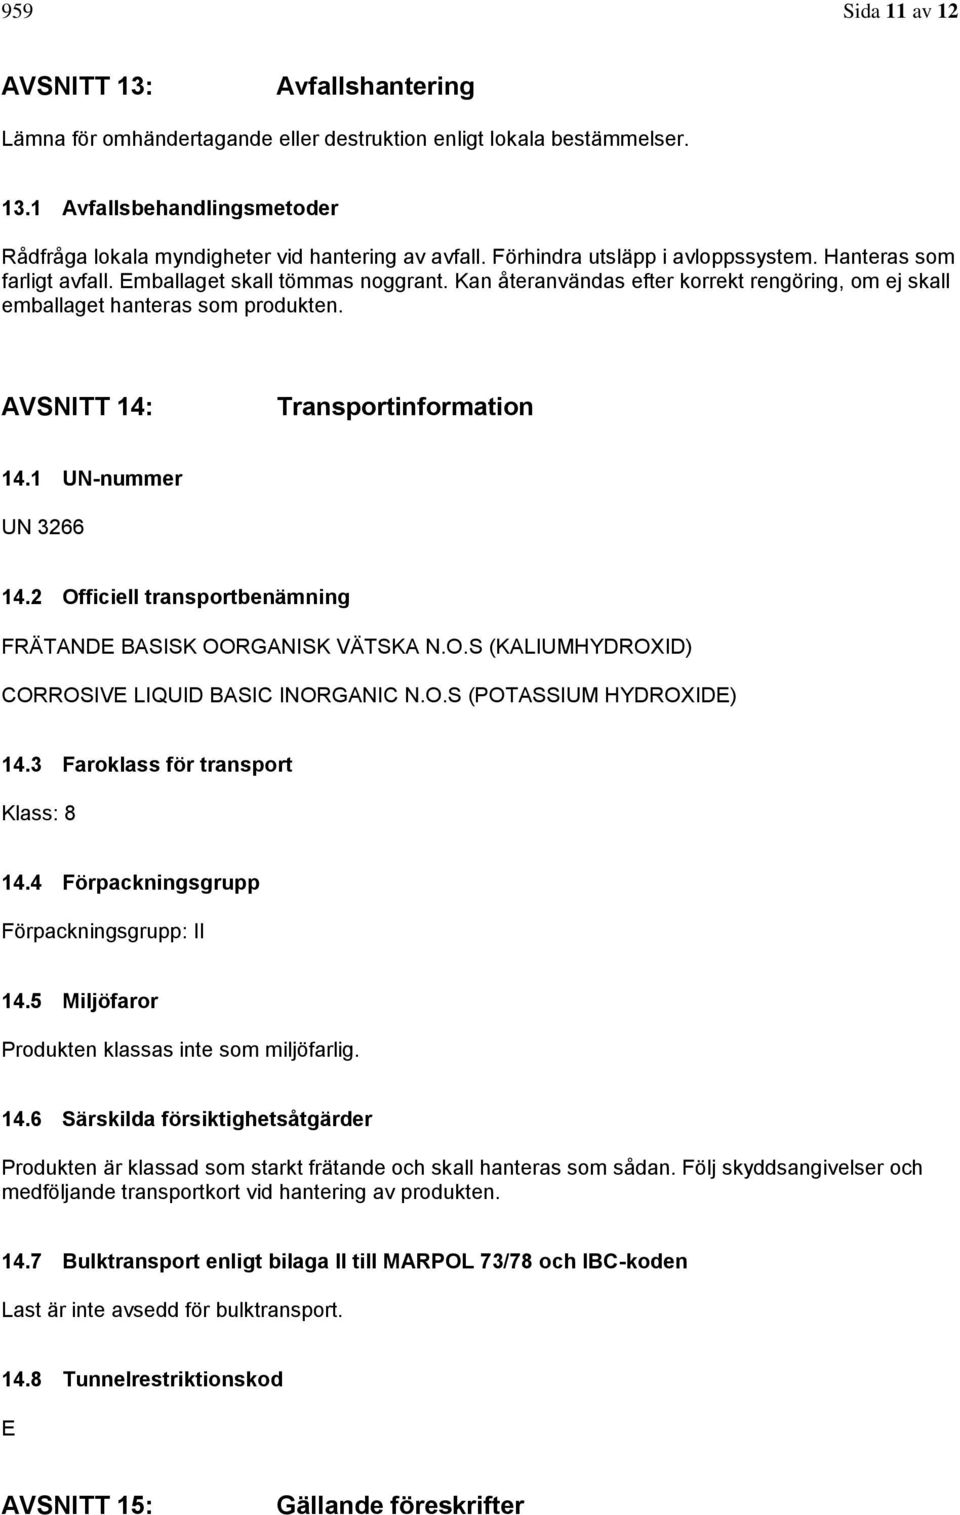 AVSNITT 14: Transportinformation 14.1 UN-nummer UN 3266 14.2 Officiell transportbenämning FRÄTANDE BASISK OORGANISK VÄTSKA N.O.S (KALIUMHYDROXID) CORROSIVE LIQUID BASIC INORGANIC N.O.S (POTASSIUM HYDROXIDE) 14.